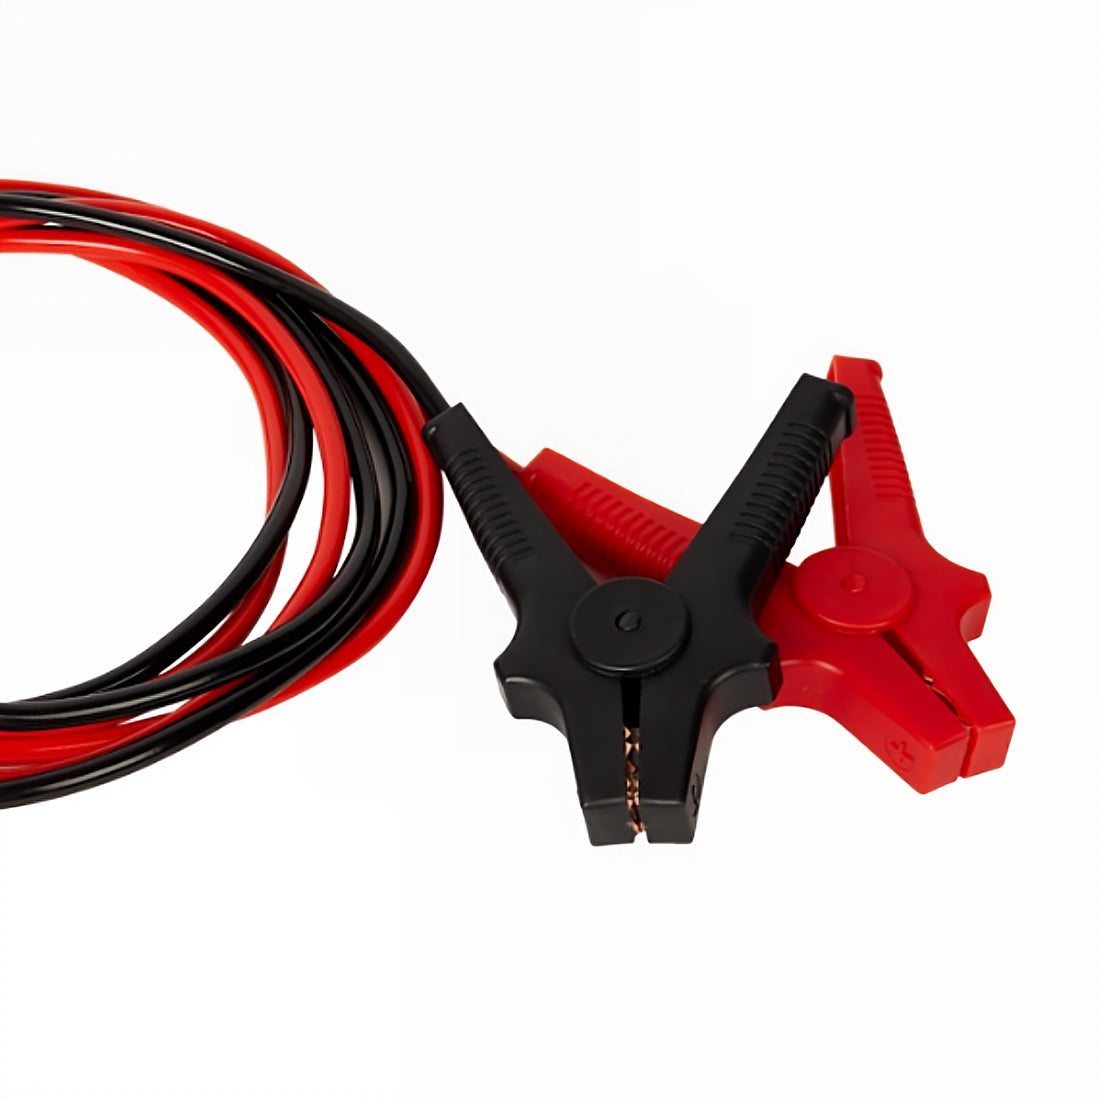 Startkabel Auto Motor Starthilfe 3m Kabel Dunlop sicher einfach robust - praktisches Hilfsmittel für den Kofferraum